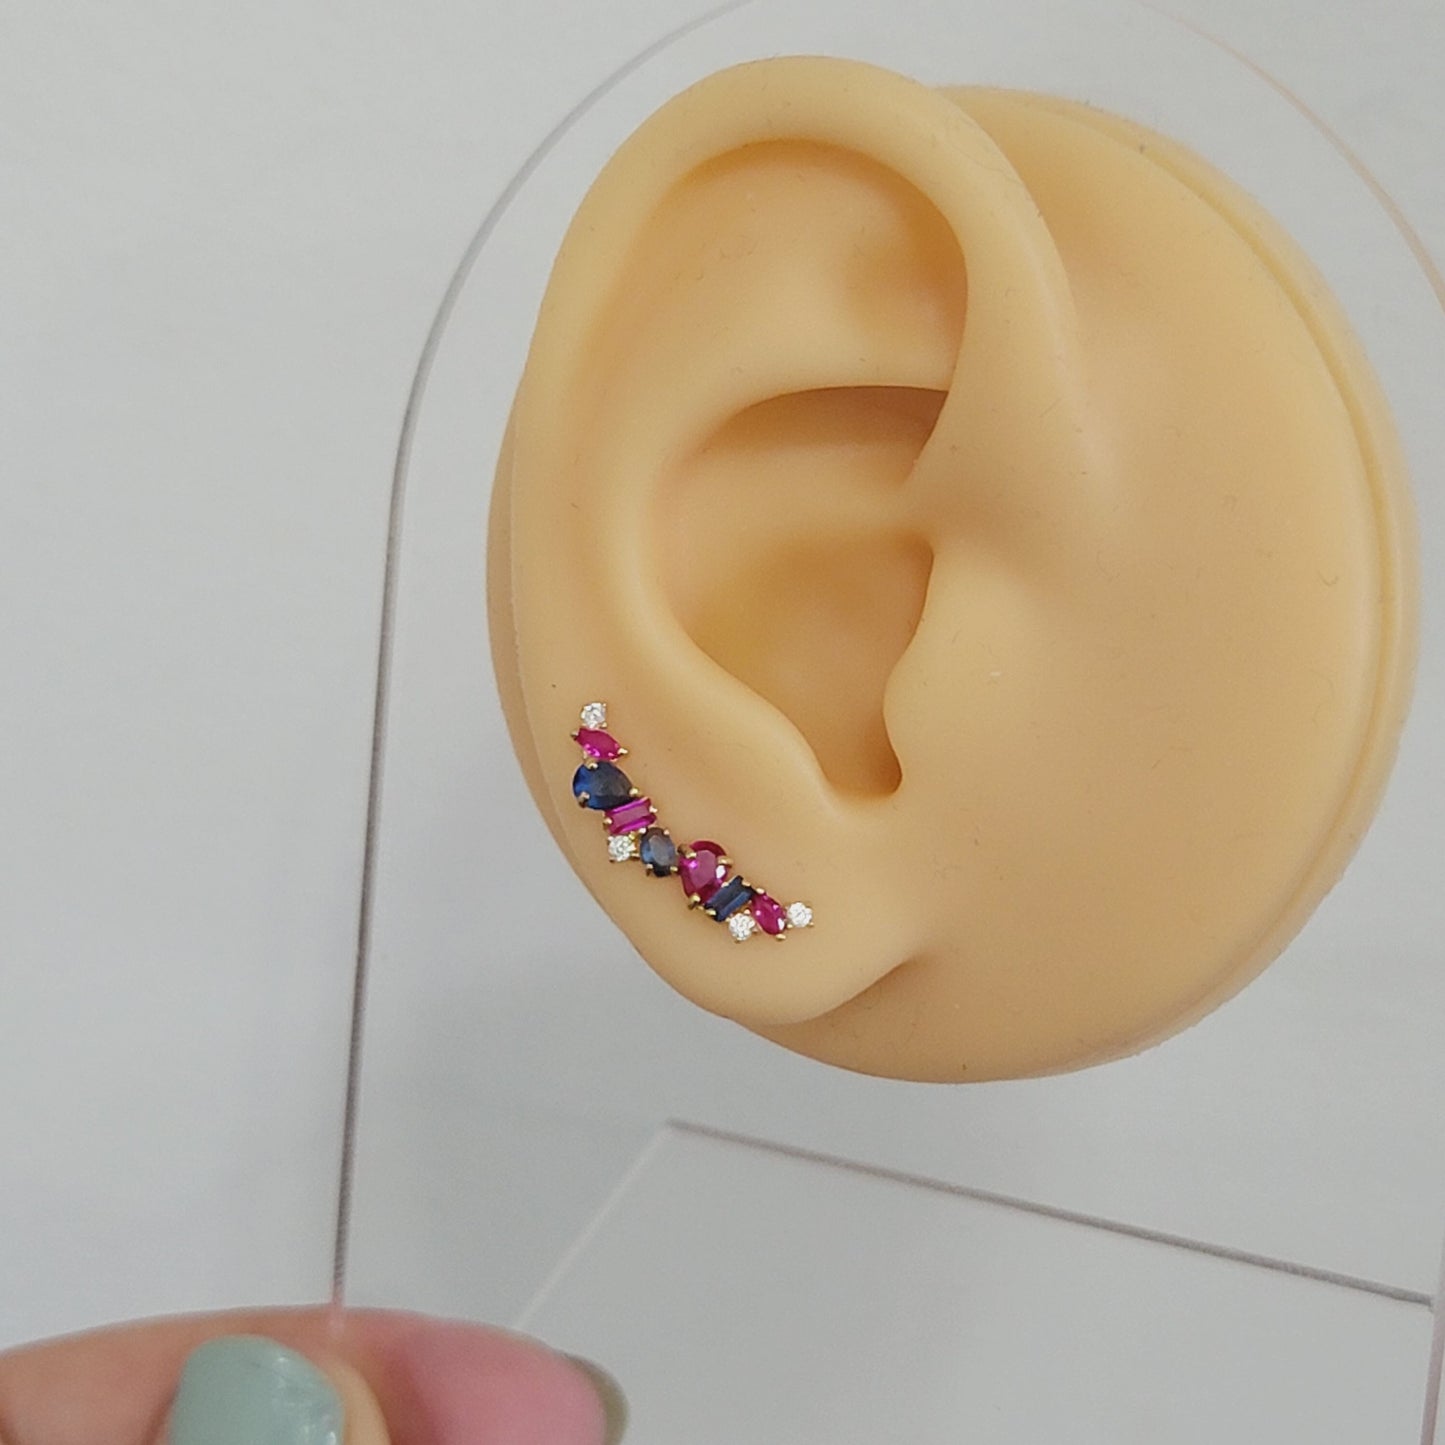 Gemstone Earrings, Ear Climber Earrings, Cluster Stud Earrings, 14k Solid Gold Earrings, Gemstone Stud, Ear Crawler Earrings, Curved Earring